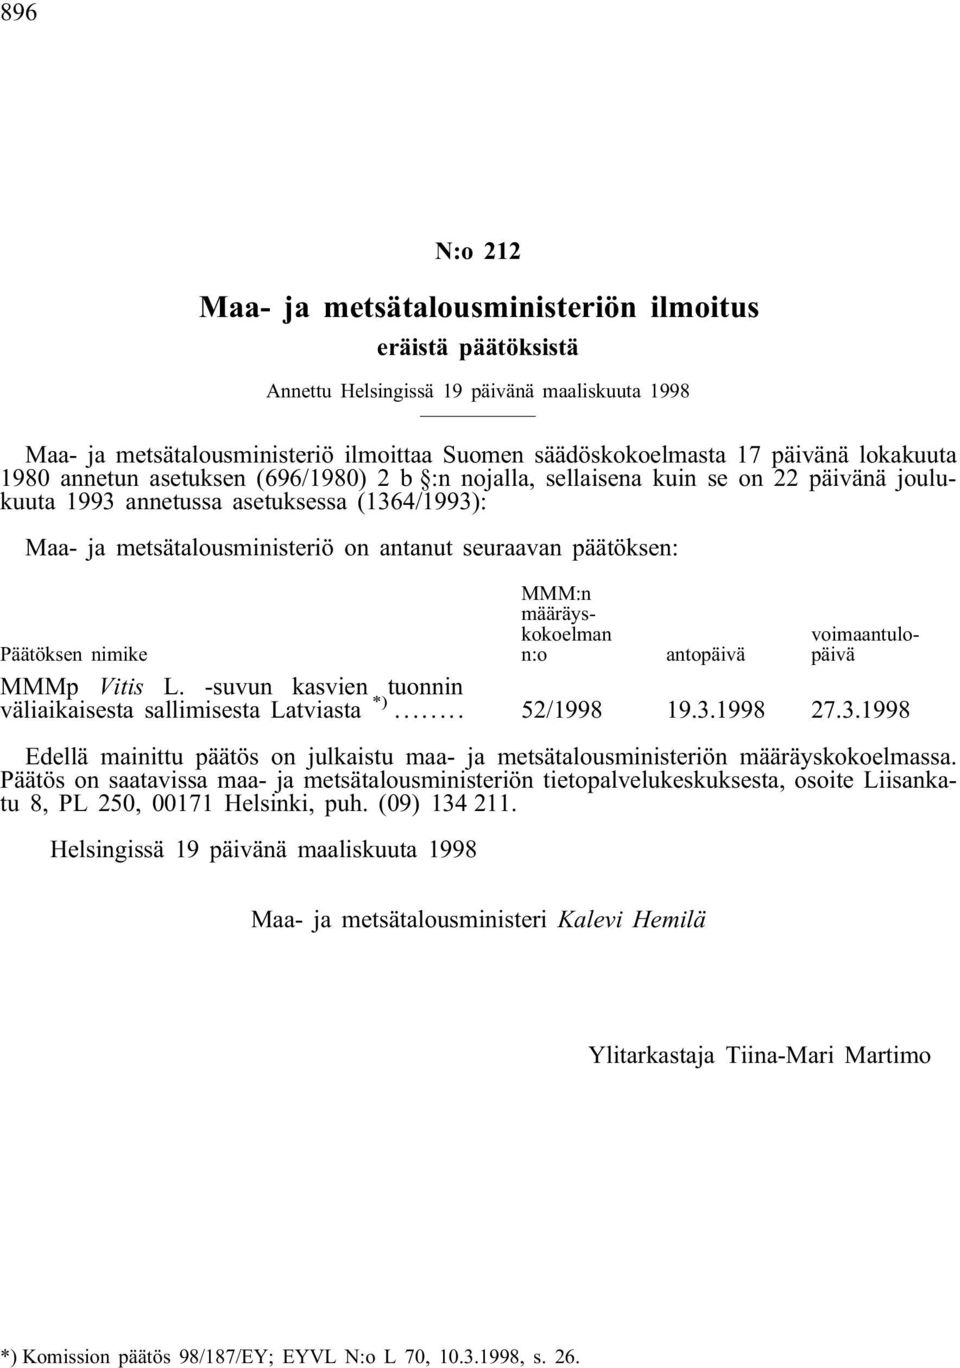 päätöksen: MMM:n määräyskokoelman n:o voimaantulopäivä Päätöksen nimike antopäivä MMMp Vitis L. -suvun kasvien tuonnin väliaikaisesta sallimisesta Latviasta *)... 52/1998 19.3.